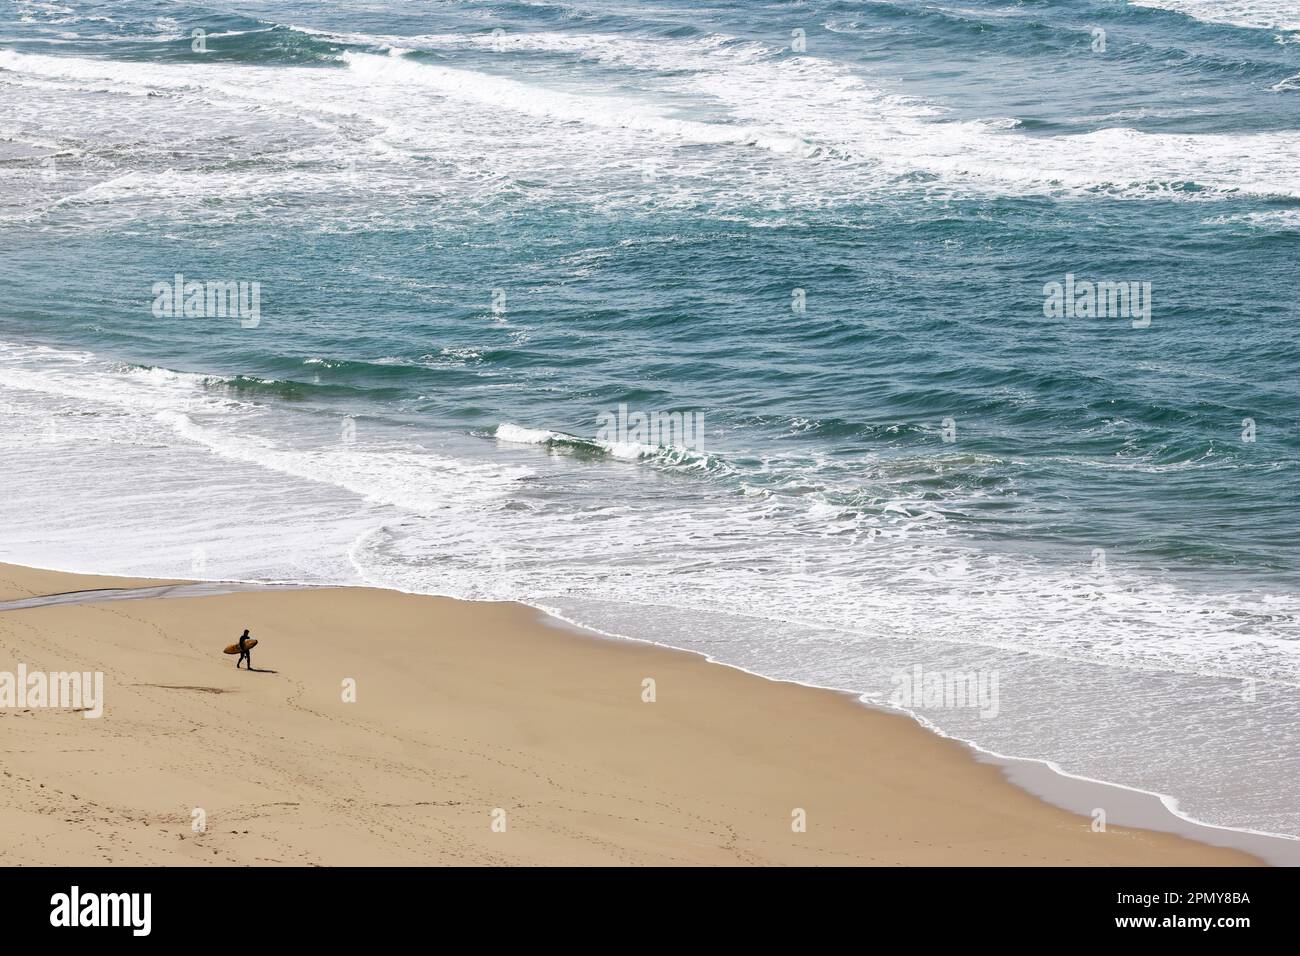 Piccola figura solista sulla spiaggia sabbiosa, contemplando le onde dell'oceano Foto Stock